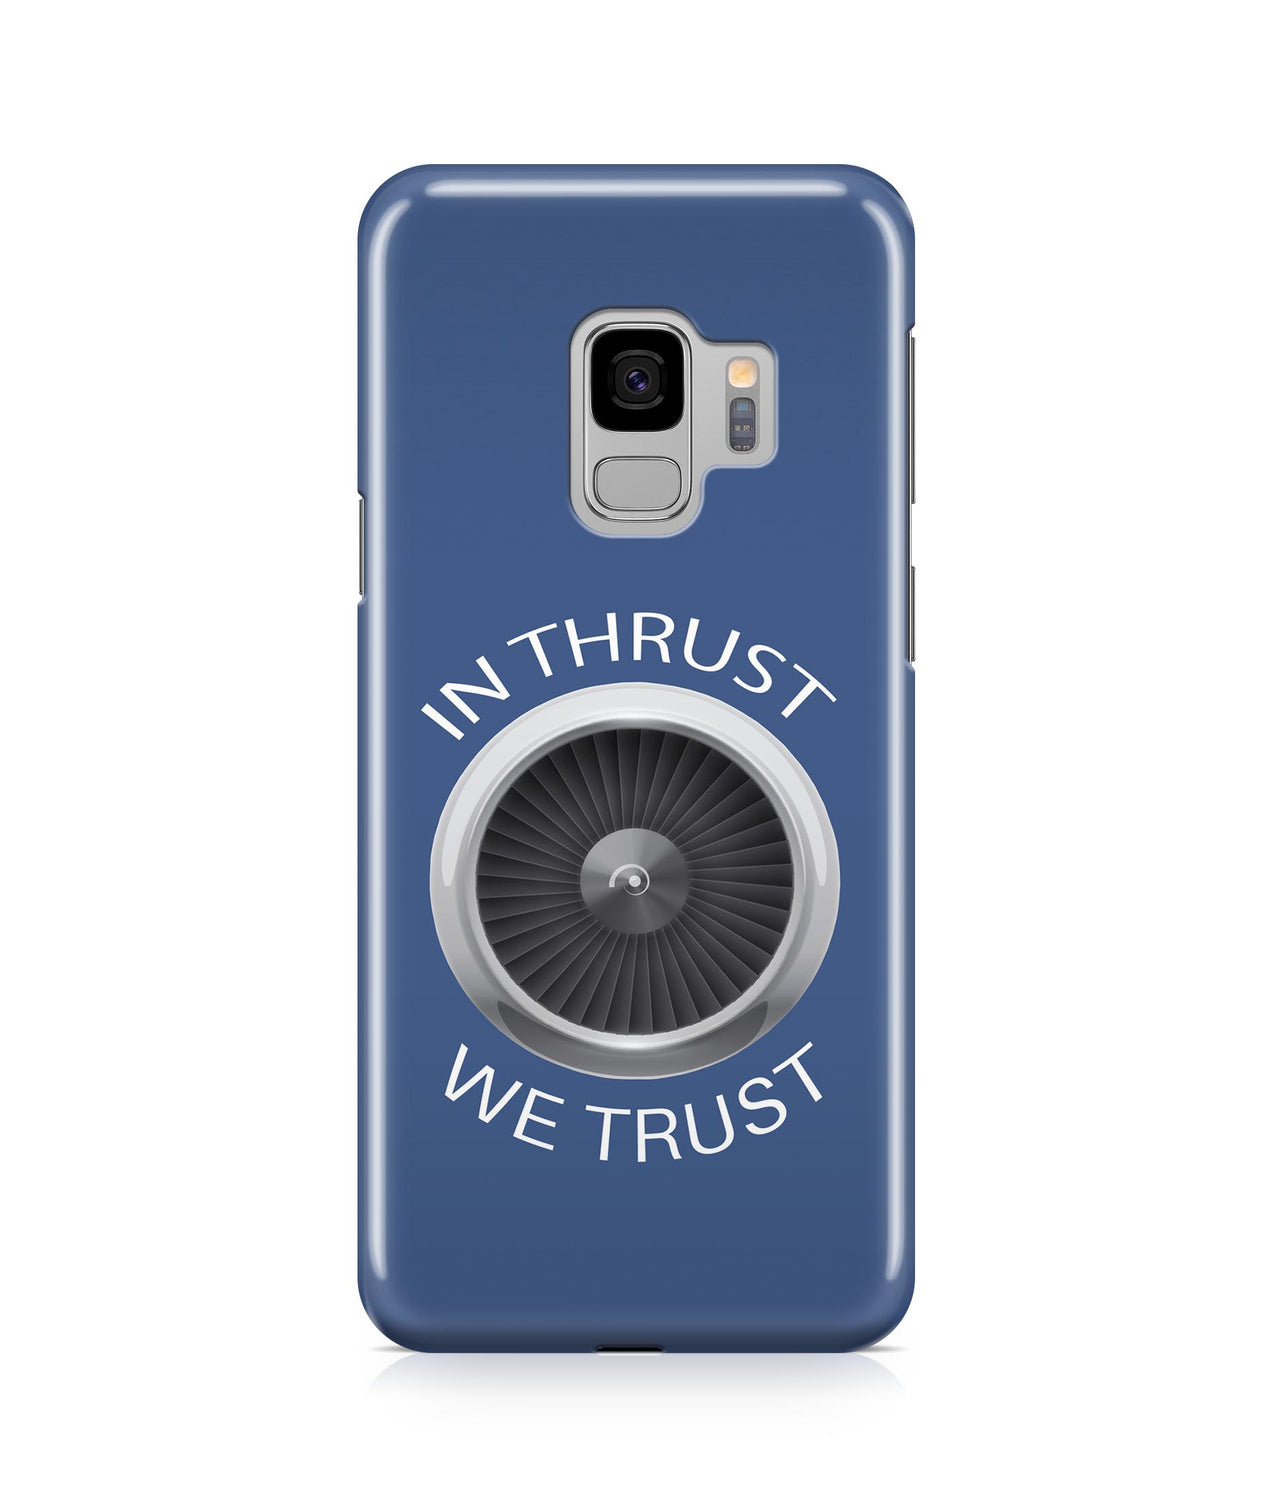 In Thrust We Trust Designed Samsung J Cases